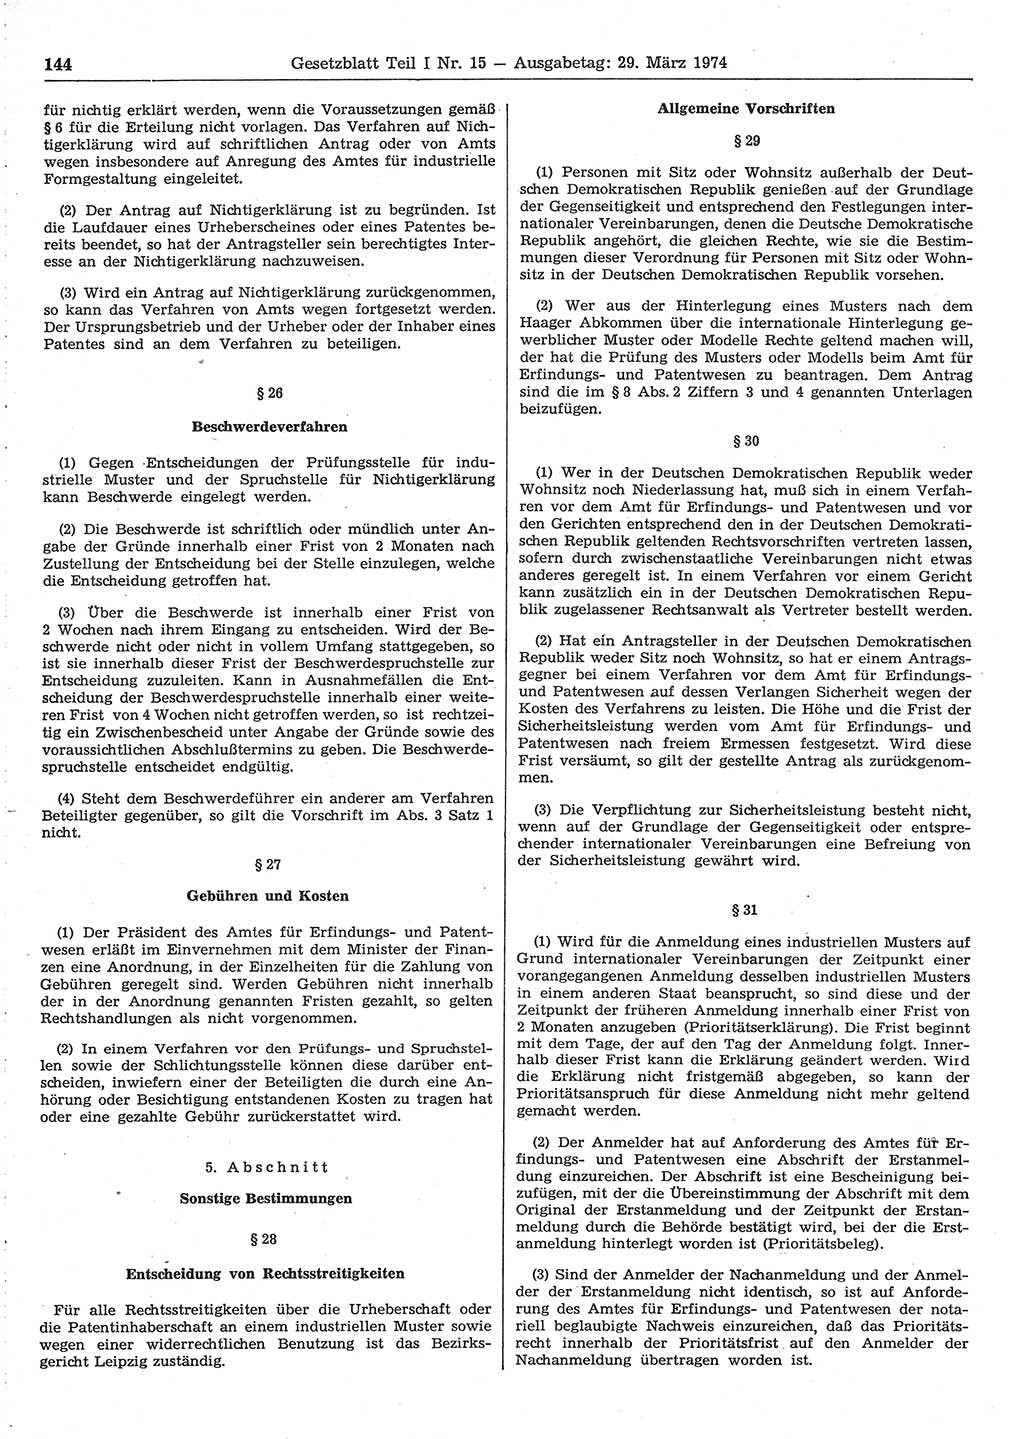 Gesetzblatt (GBl.) der Deutschen Demokratischen Republik (DDR) Teil Ⅰ 1974, Seite 144 (GBl. DDR Ⅰ 1974, S. 144)